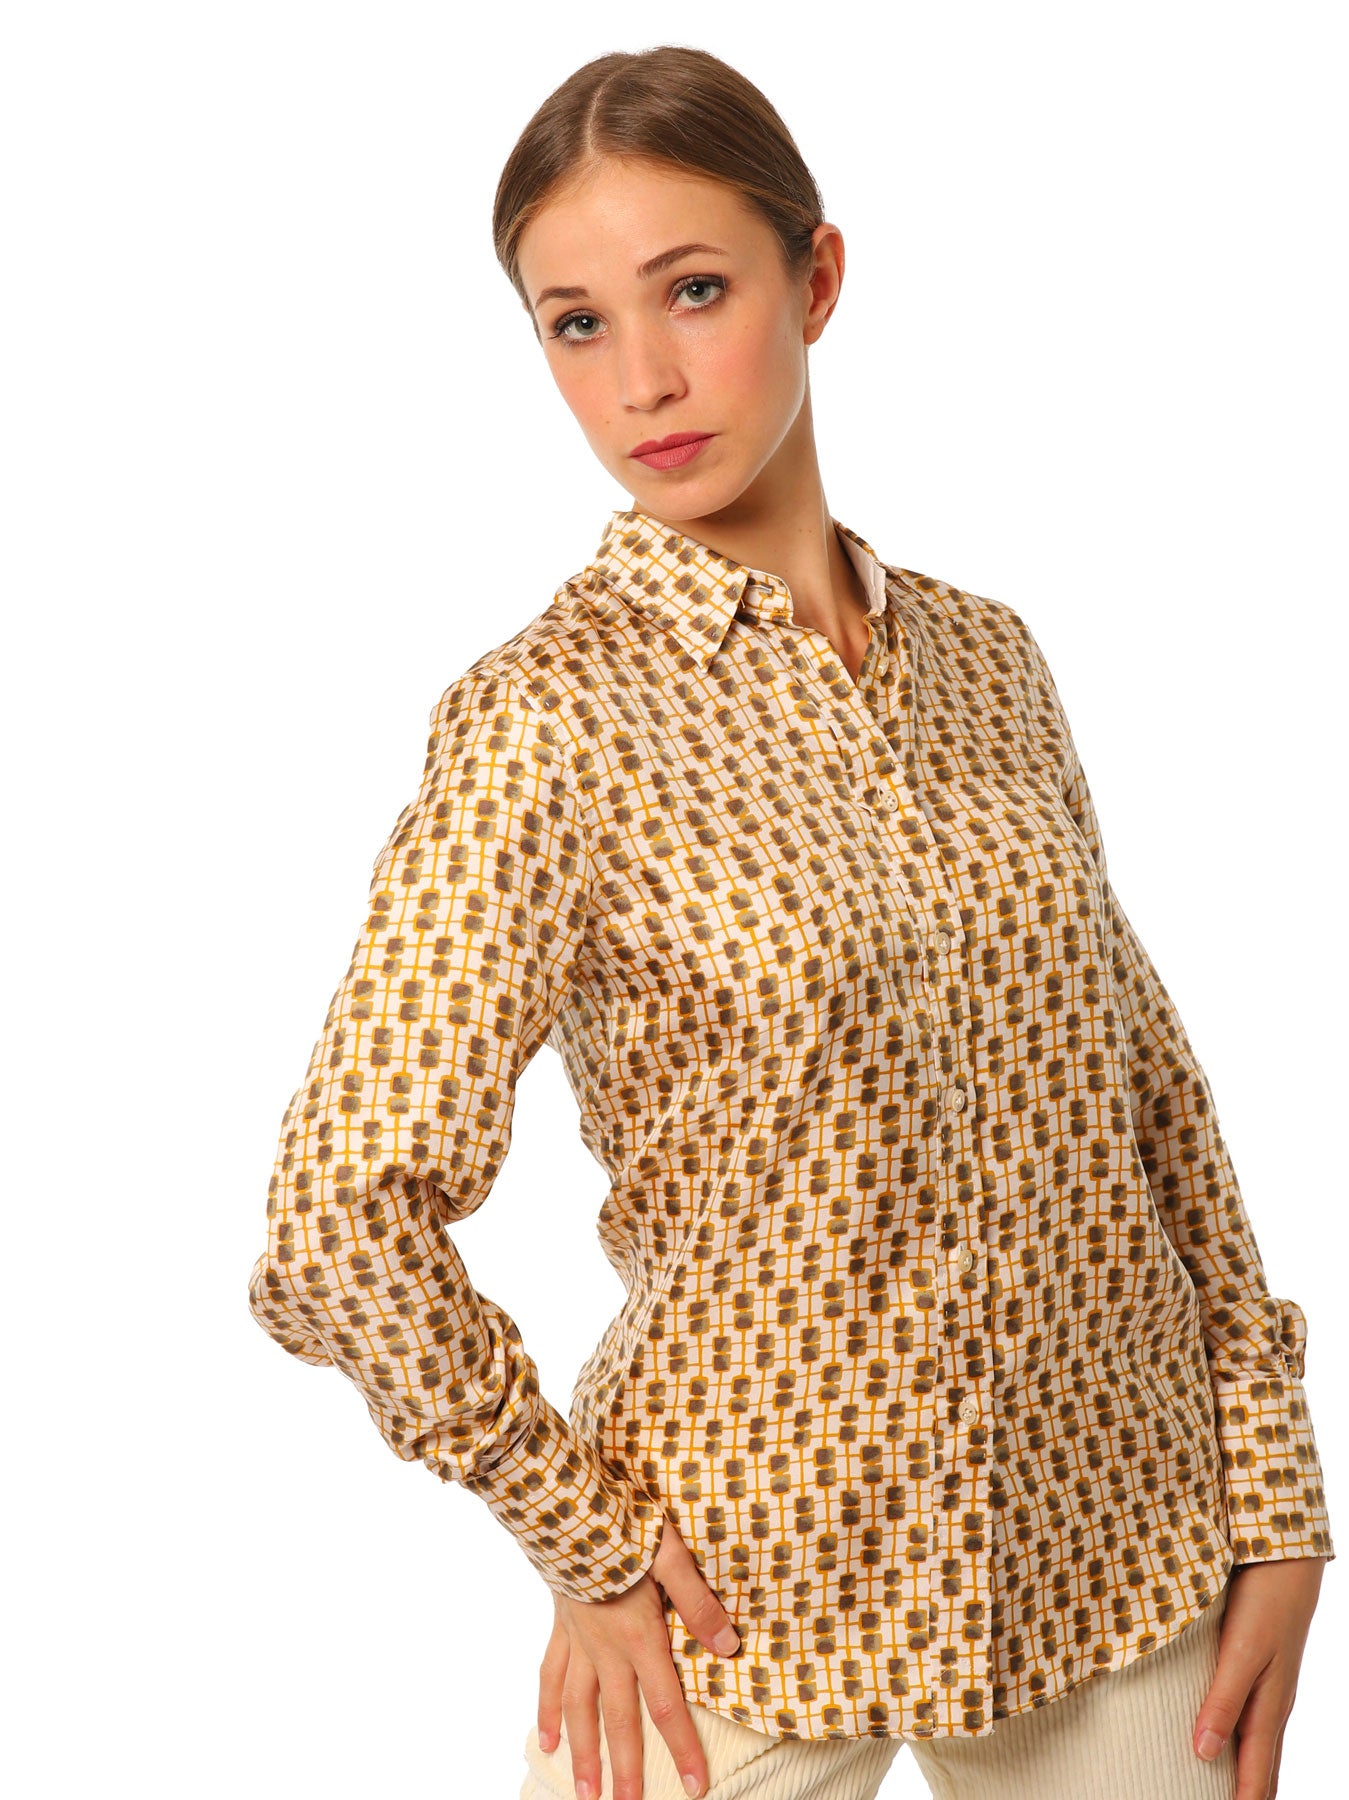 Women's shirts with geometric pattern